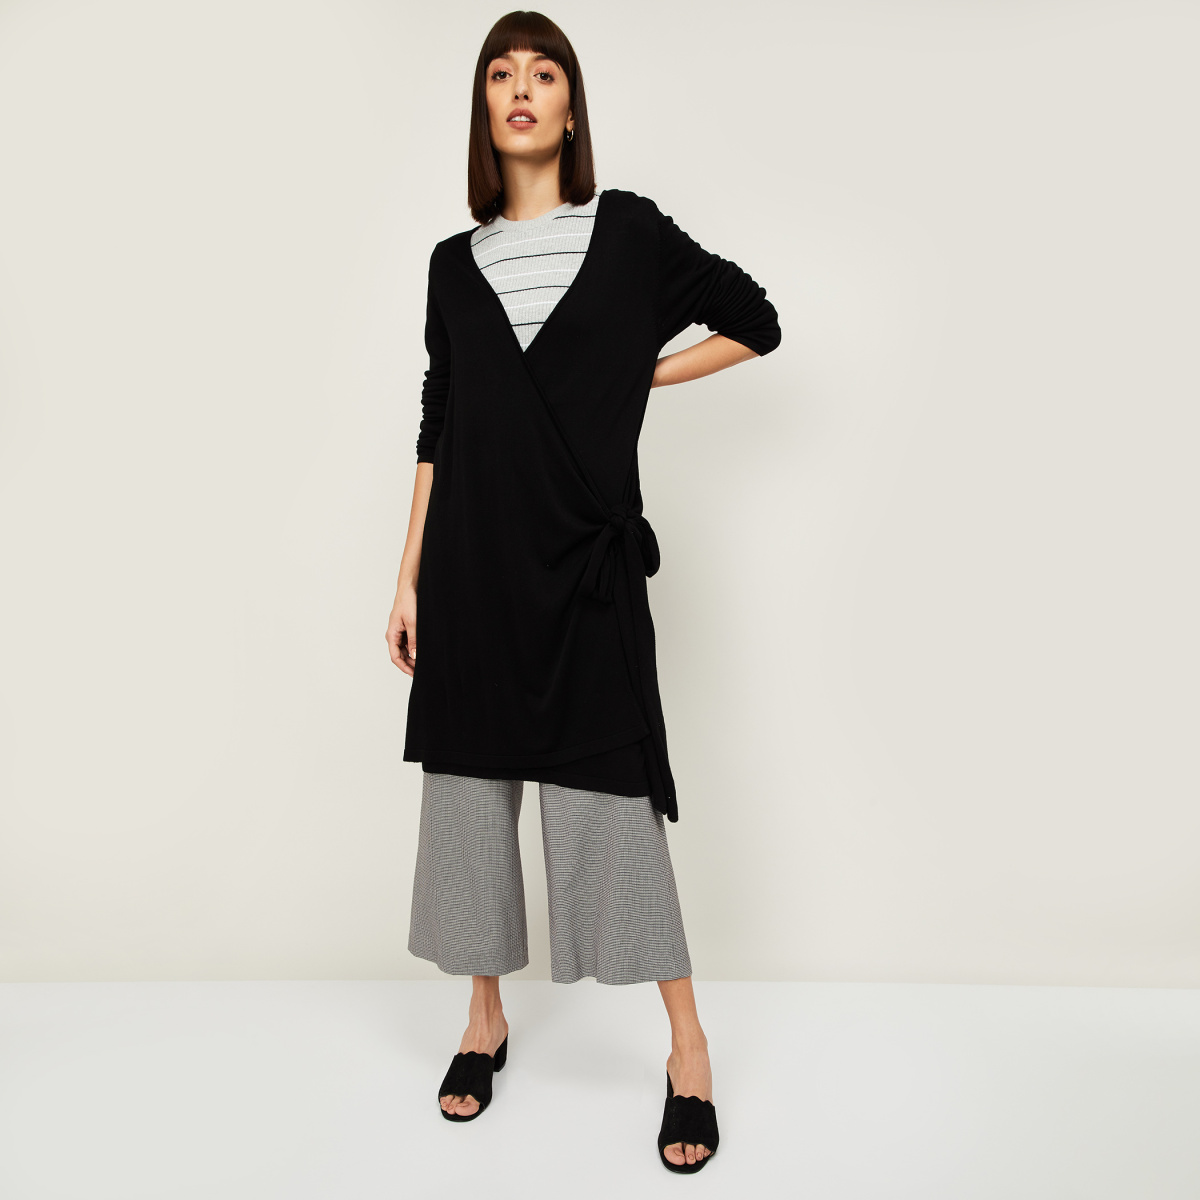 

VAN HEUSEN Women Textured Longline Sweater, Black